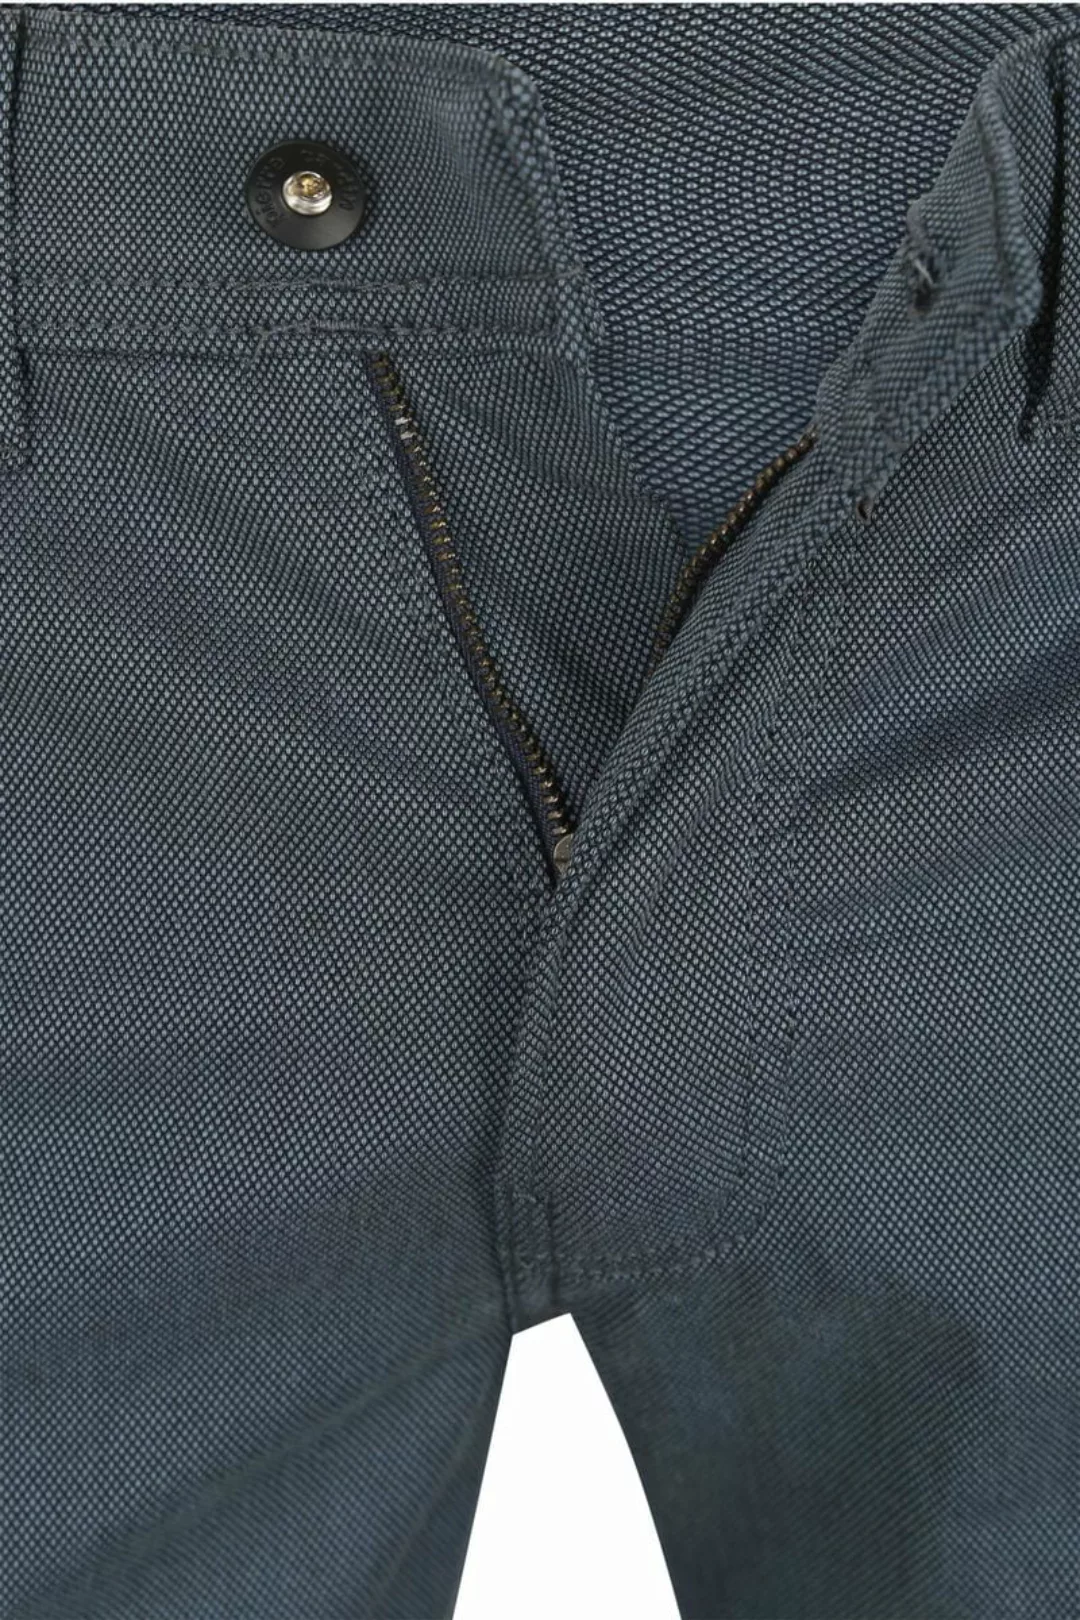 Pierre Cardin Trousers Lyon Tapered Ocean Blau - Größe W 33 - L 34 günstig online kaufen